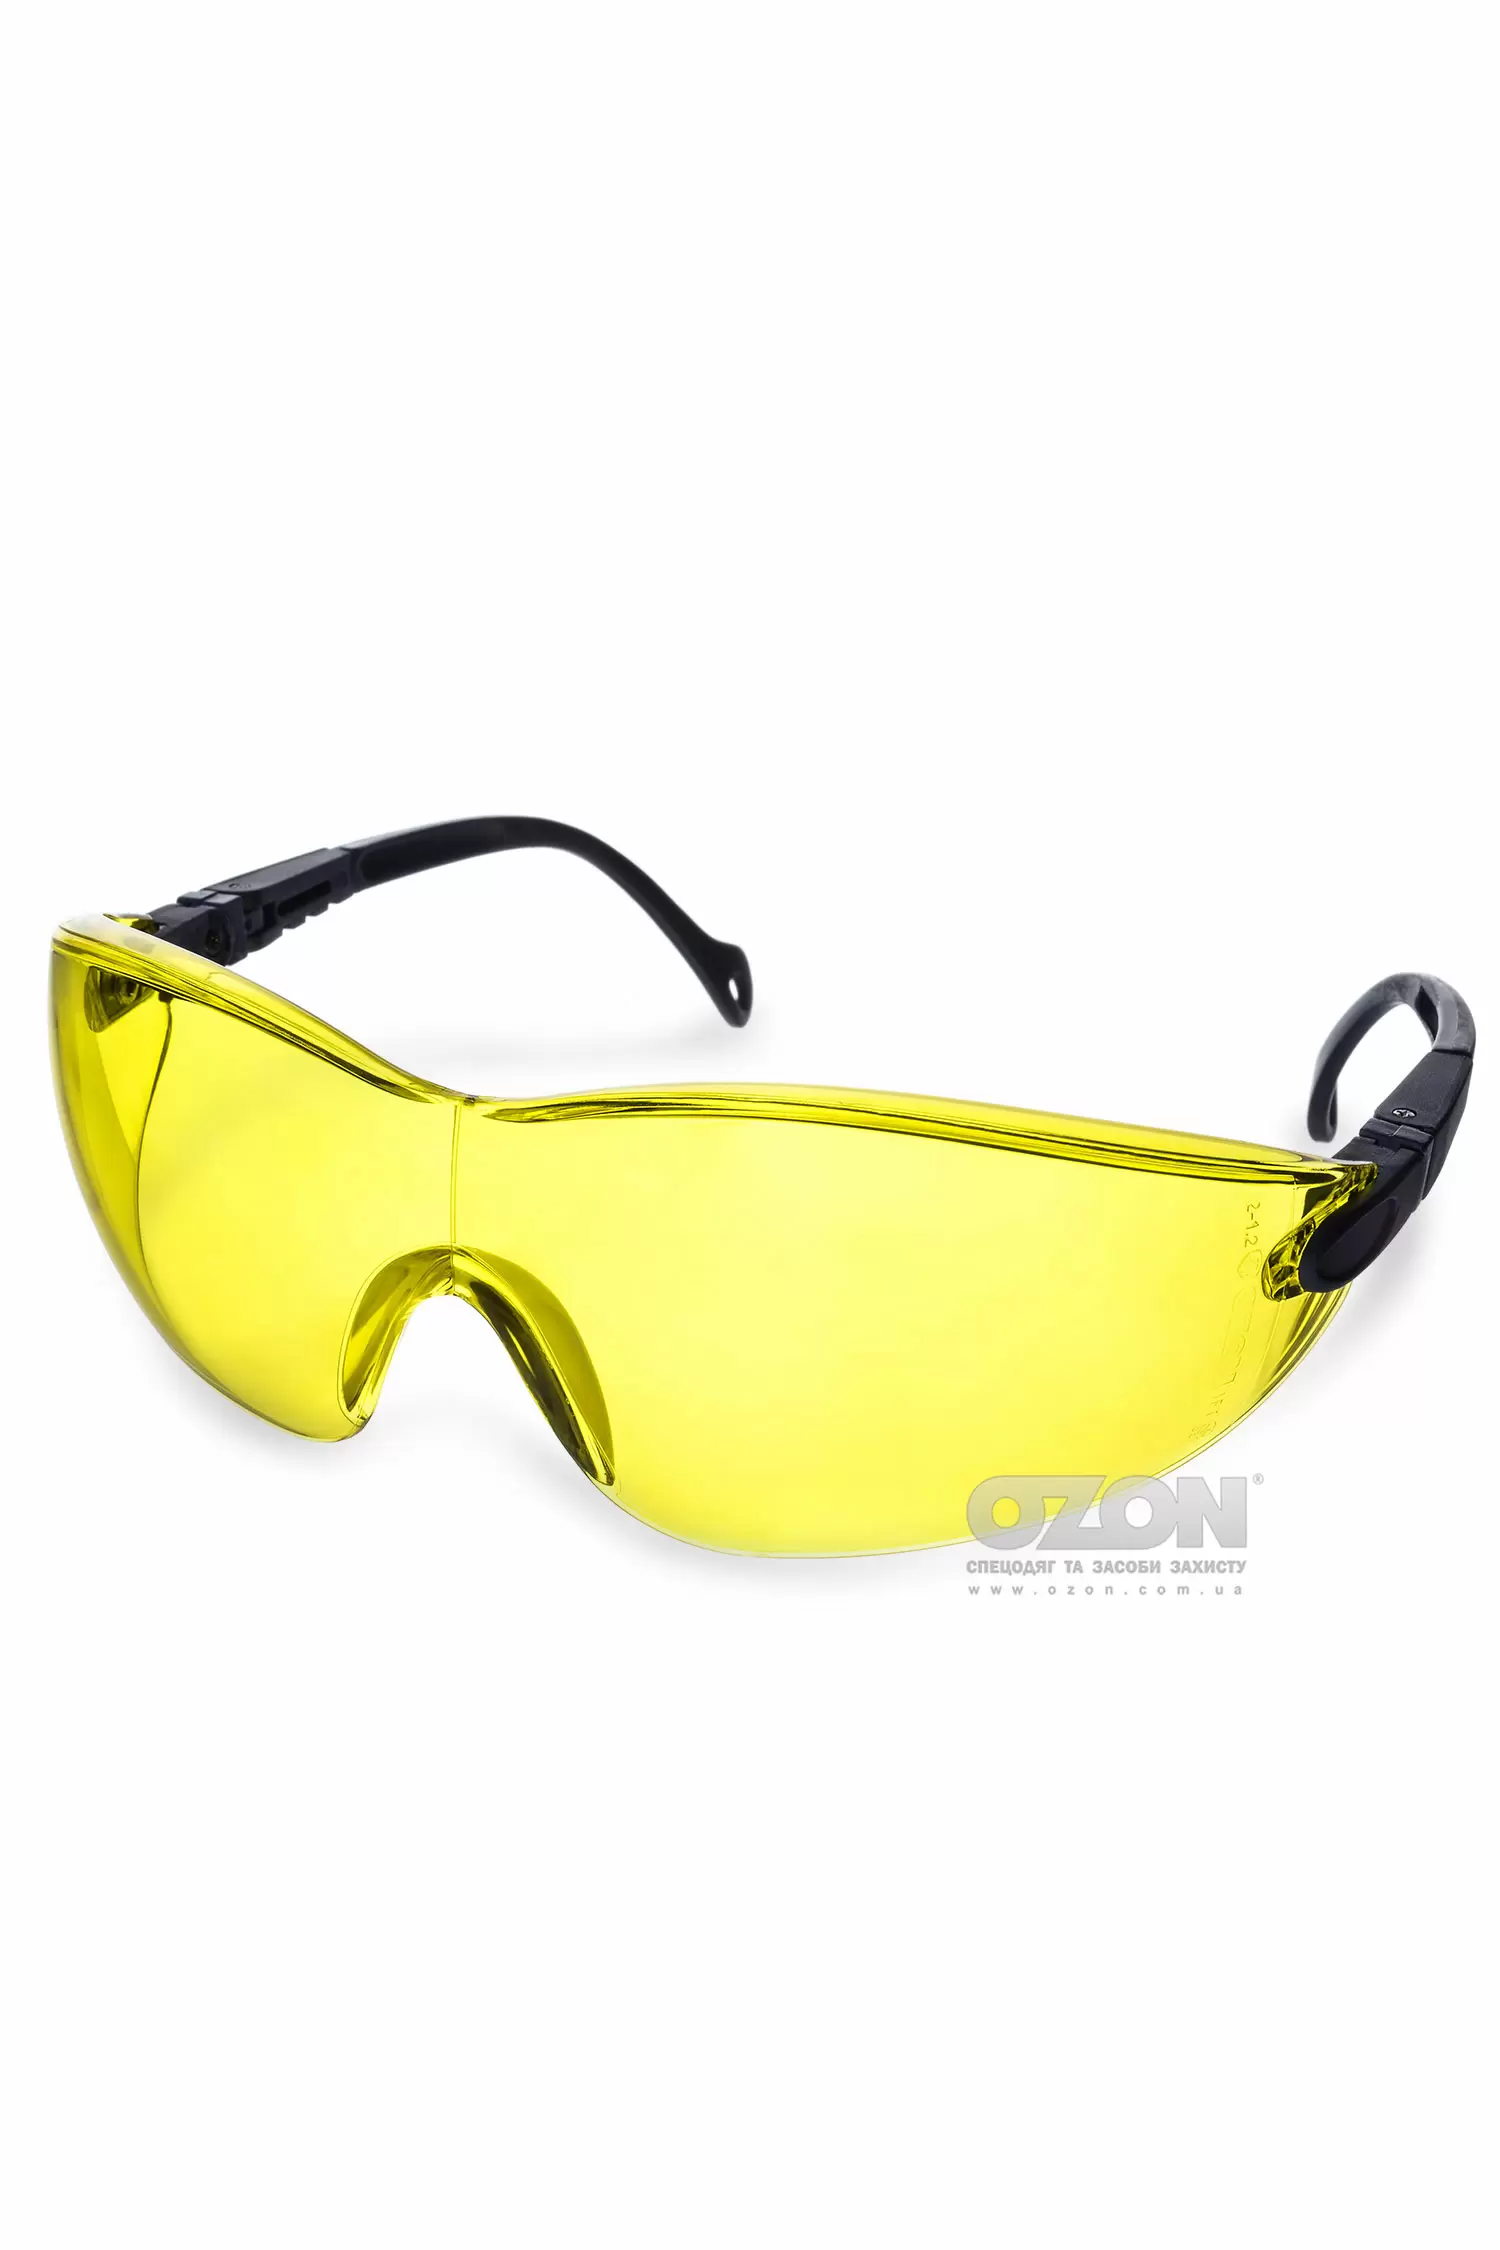 Защитные очки OZON™ 7-051, желтые - Фото 1